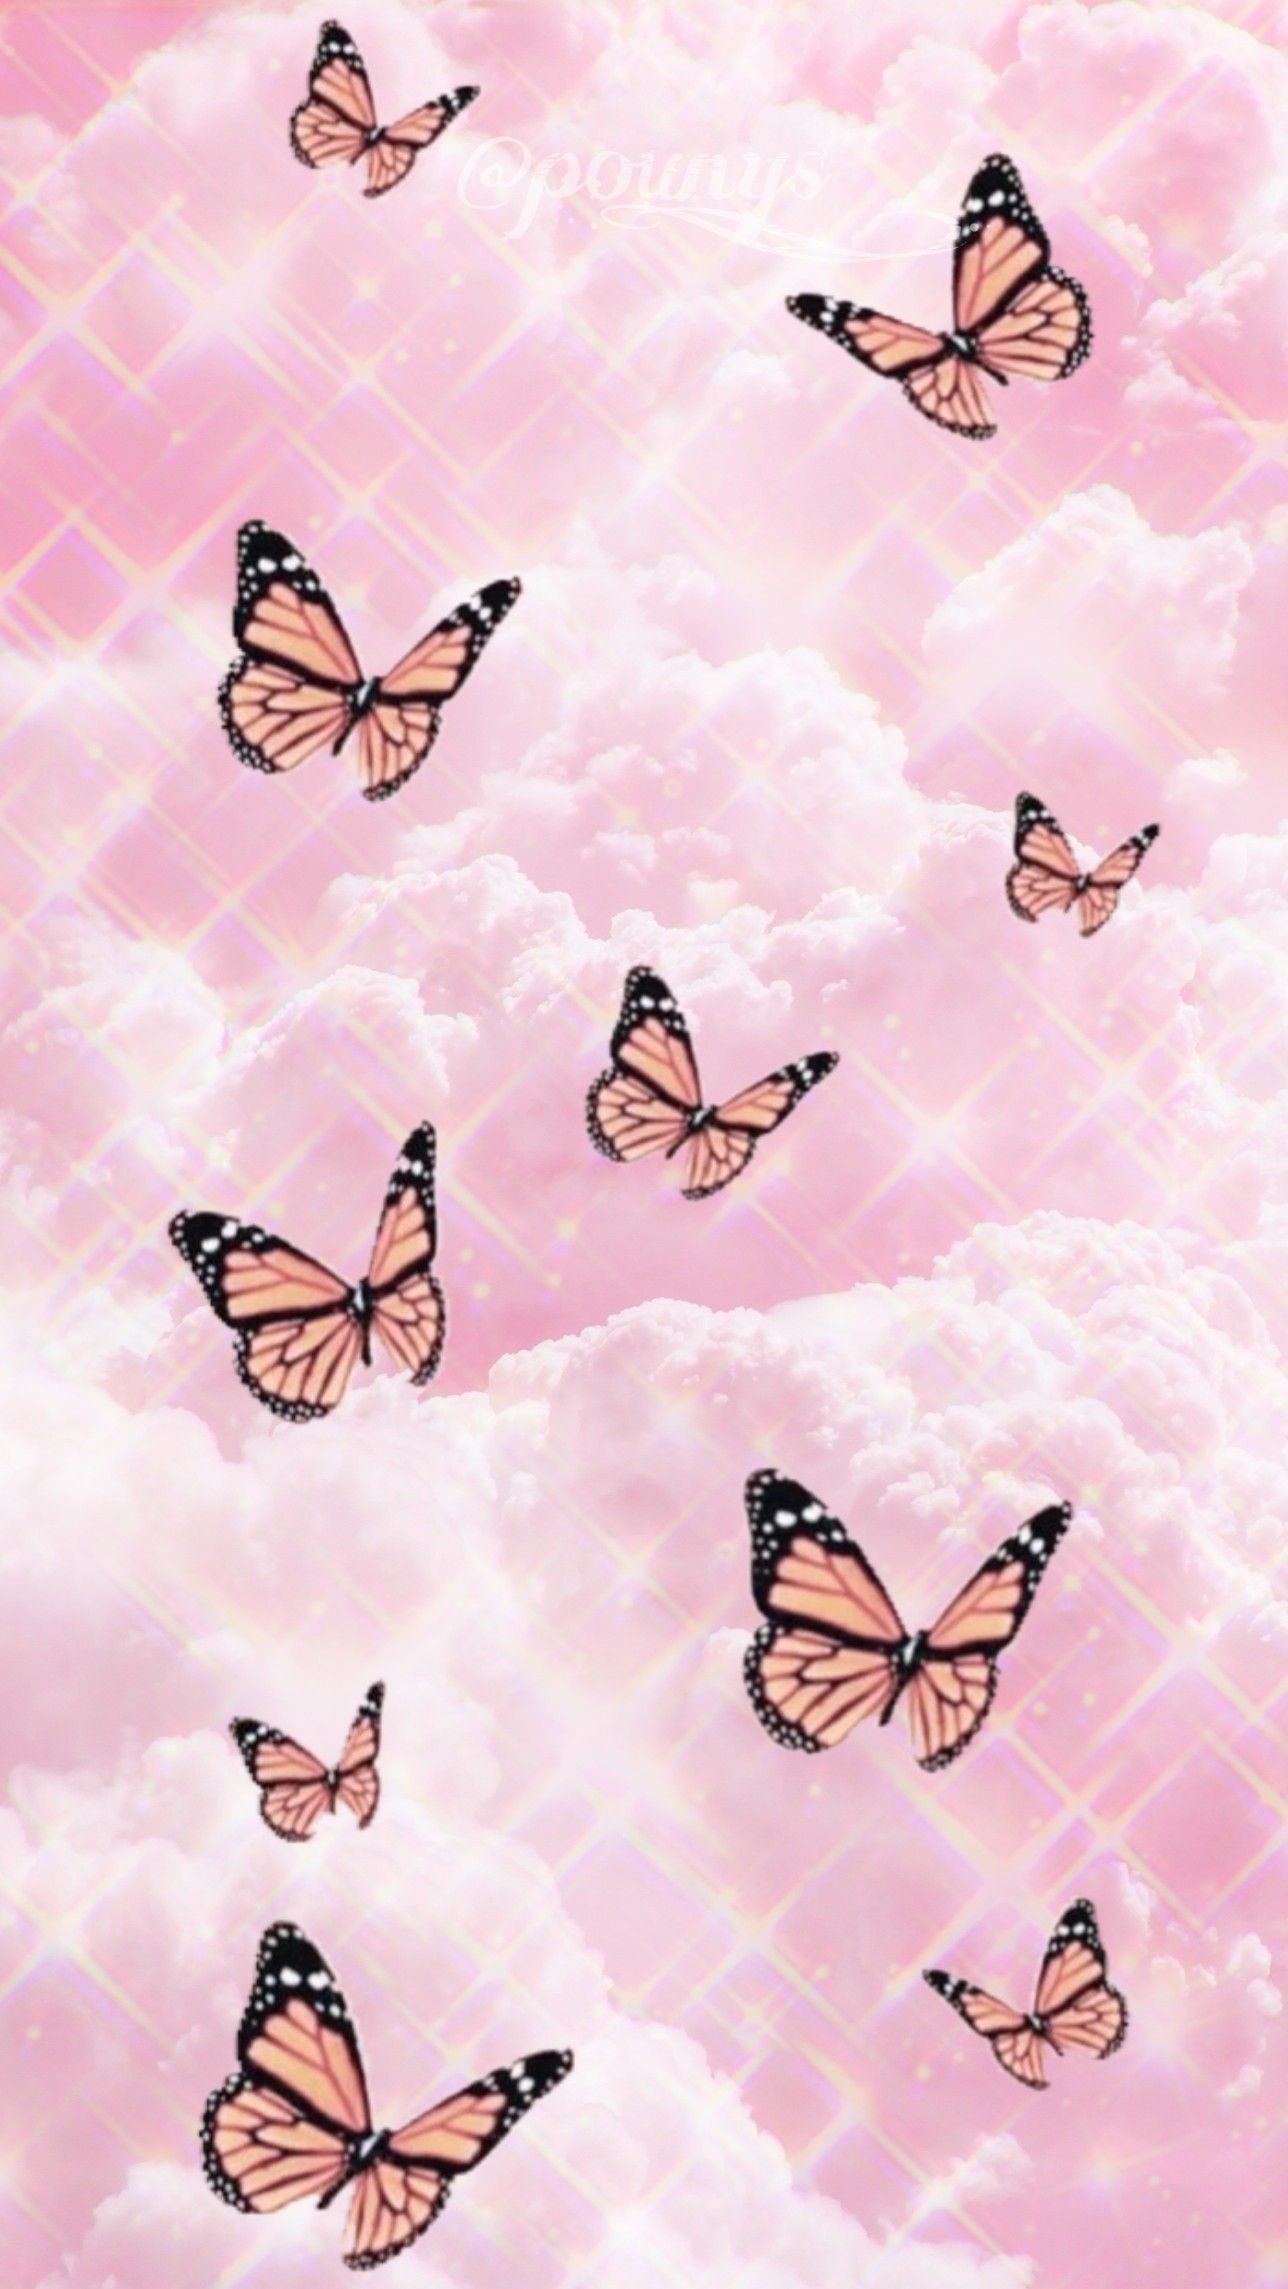 Butterfly aesthetic HD wallpapers  Pxfuel